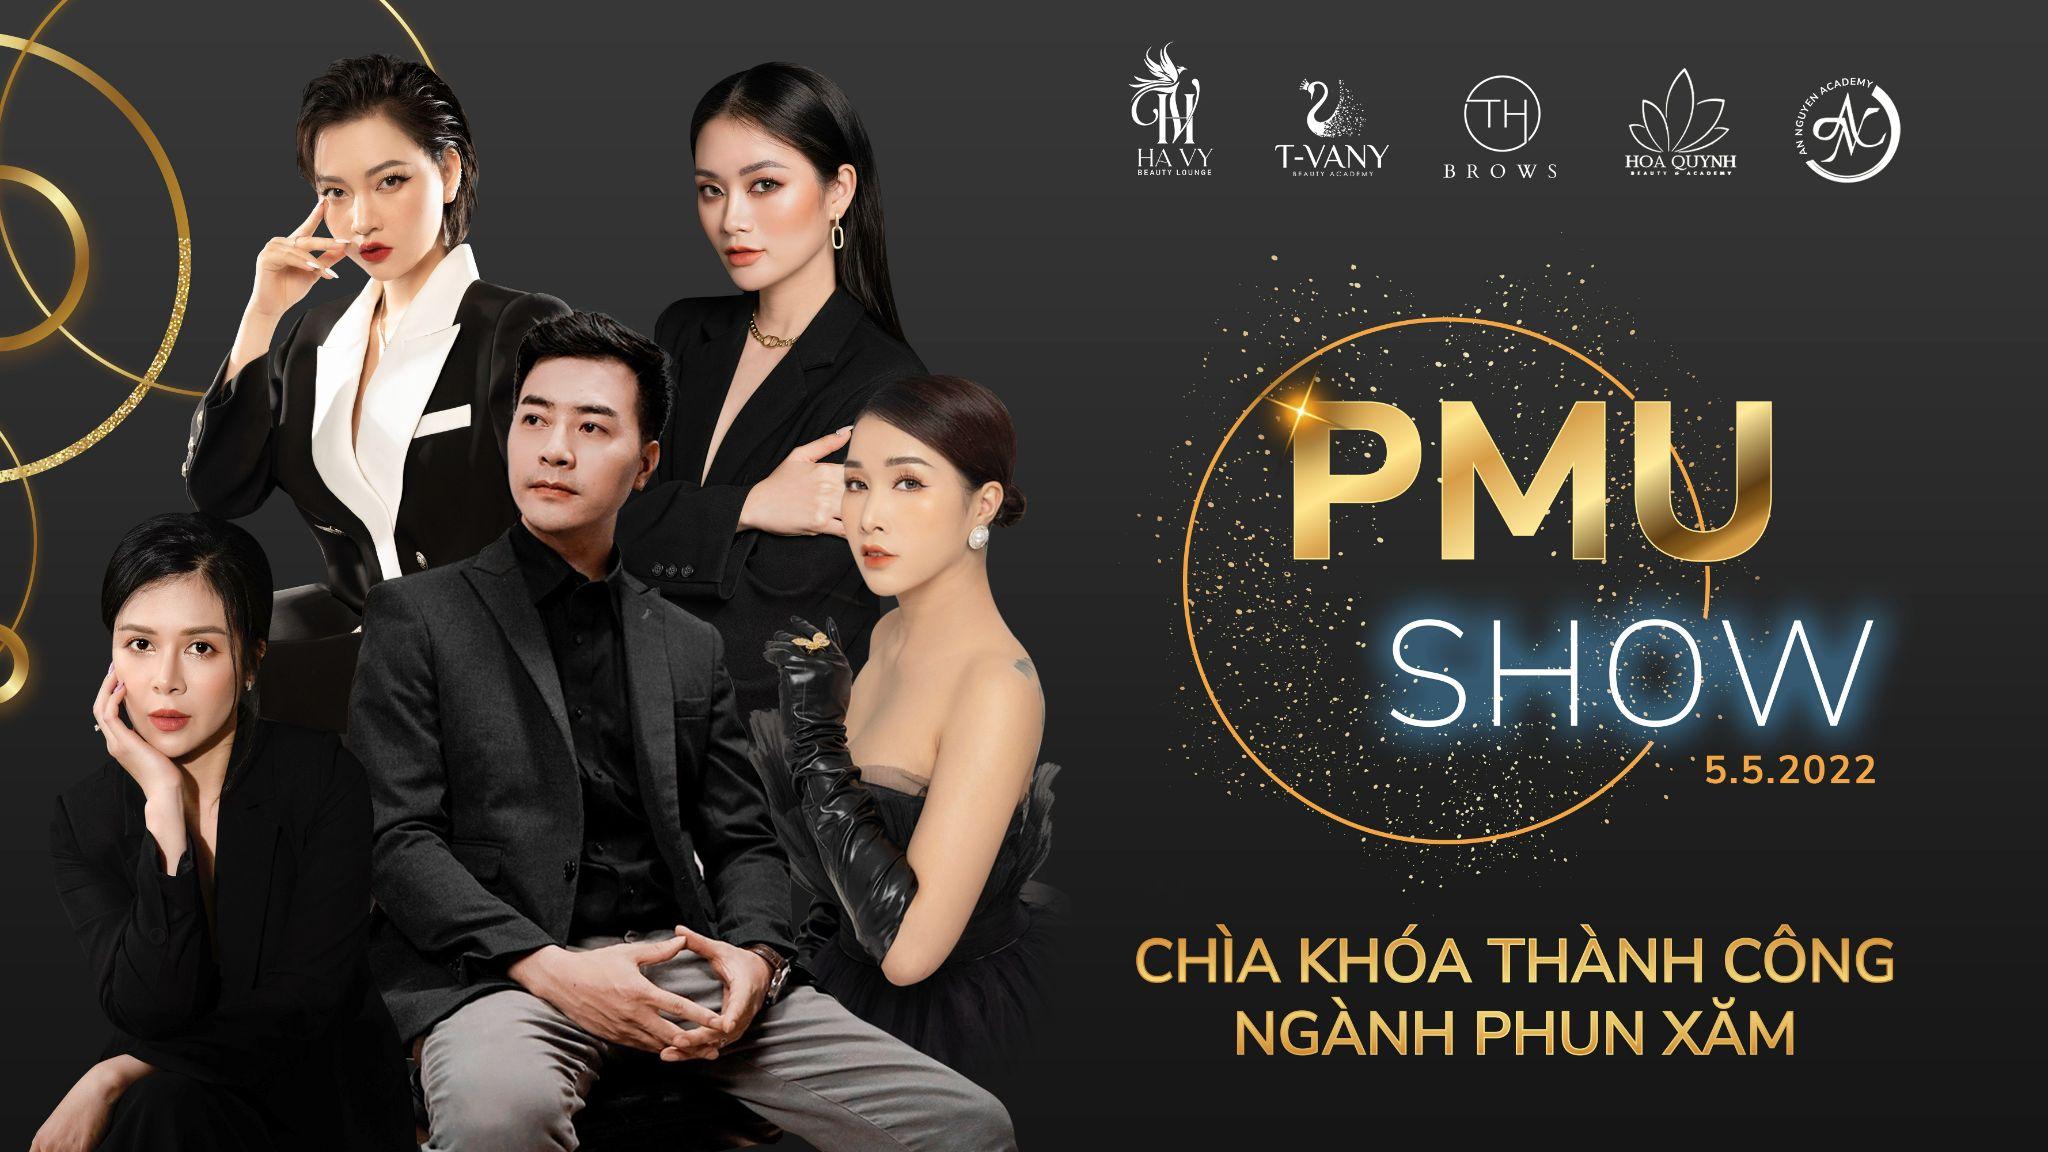 PMU Show – Chìa khóa thành công ngành phun xăm thẩm mỹ